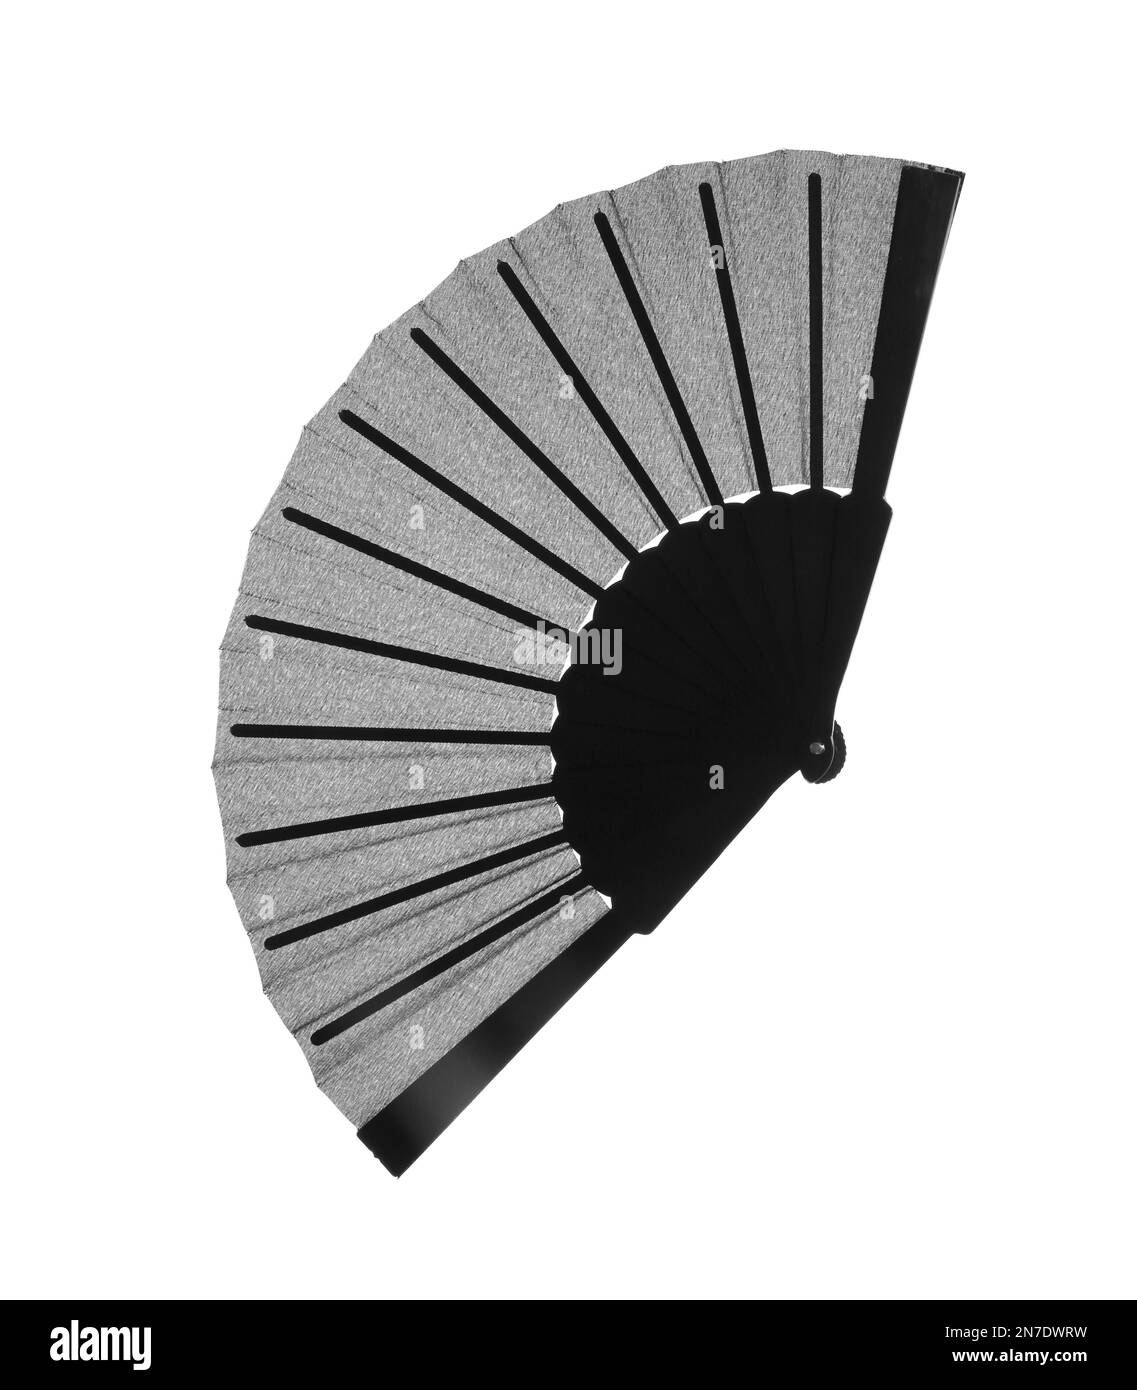 Ventola manuale nera isolata in bianco, vista dall'alto Foto Stock